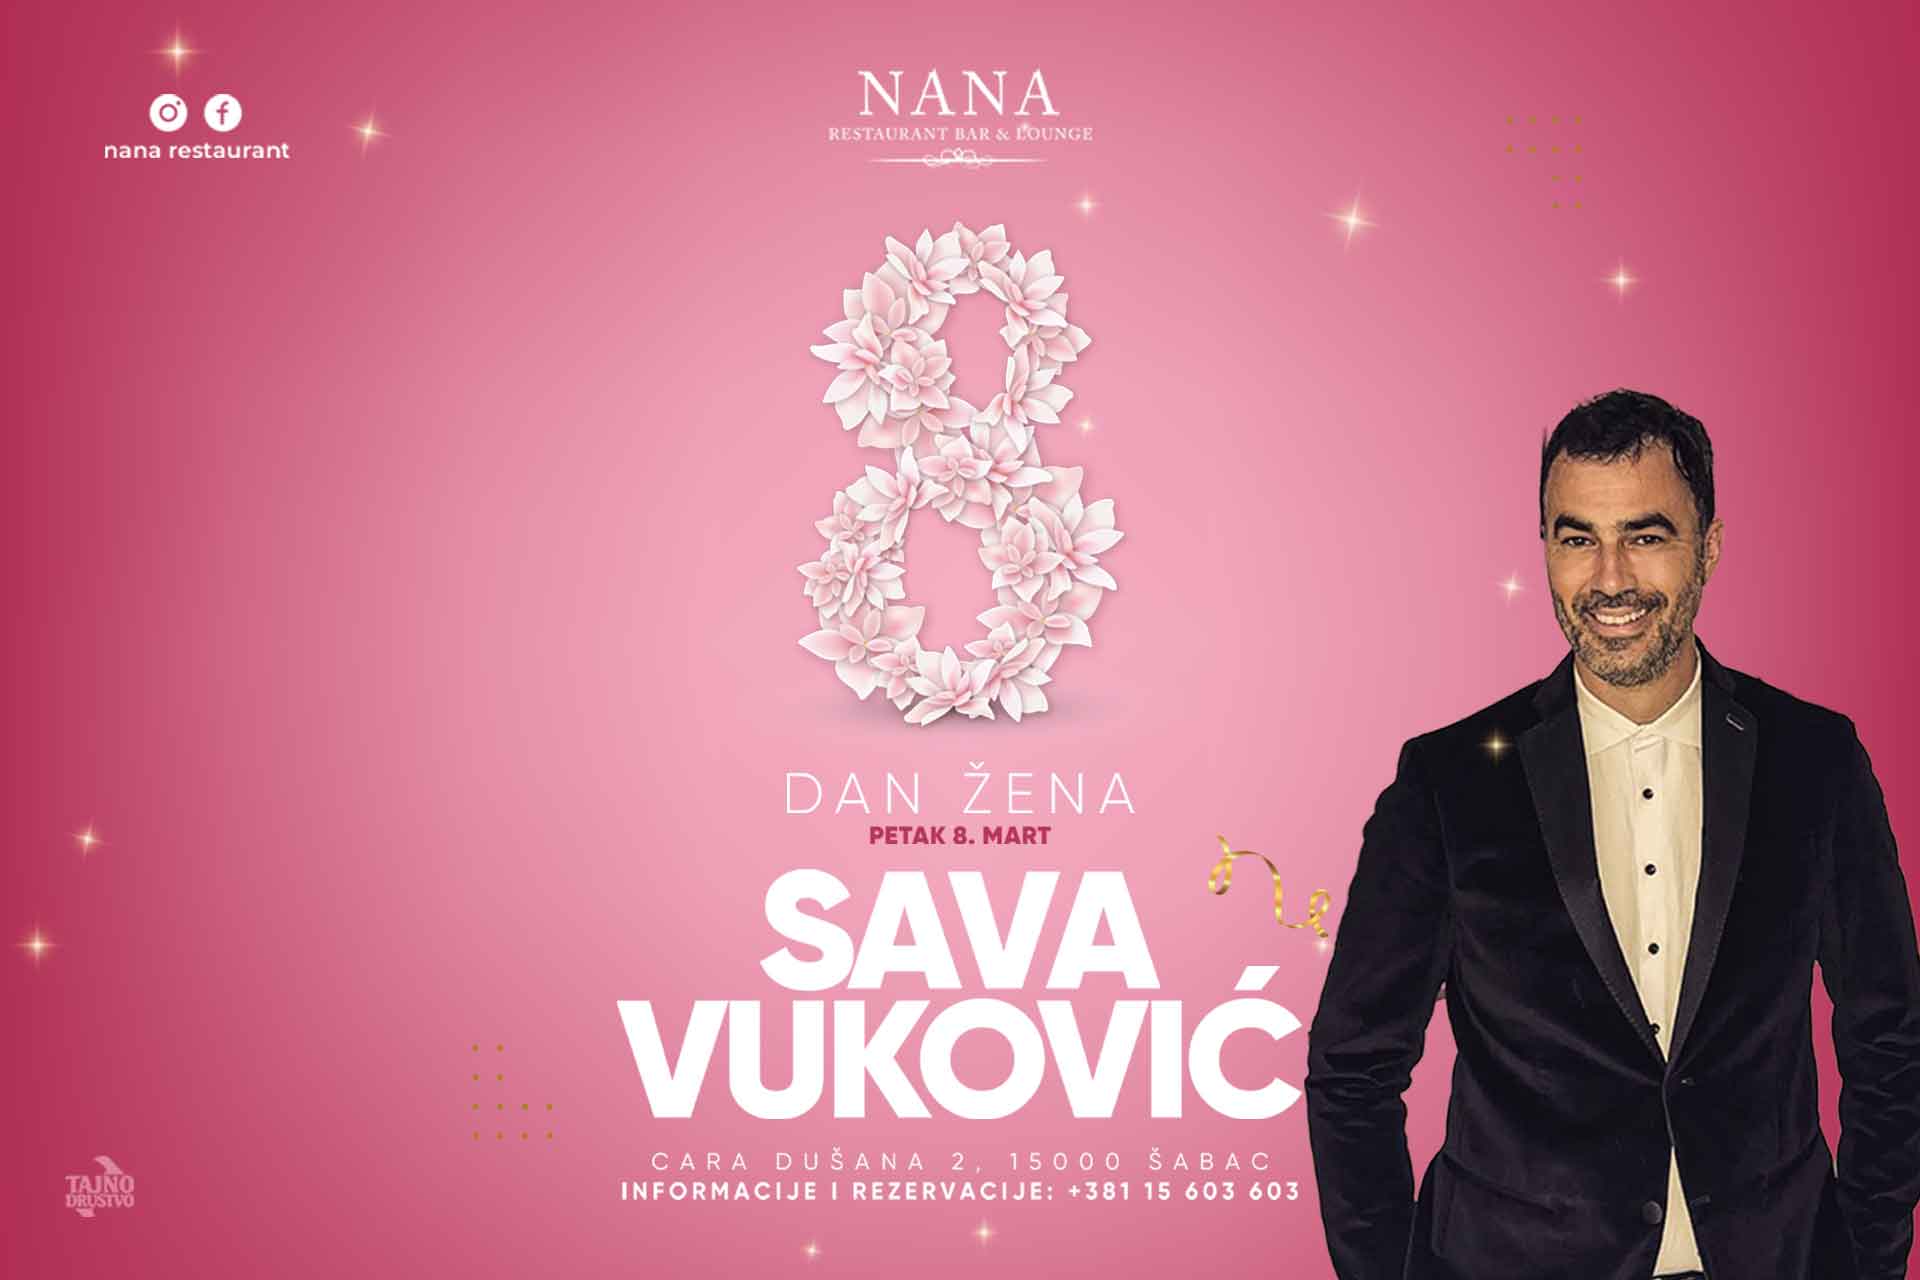 Dan žena - Sava Vuković